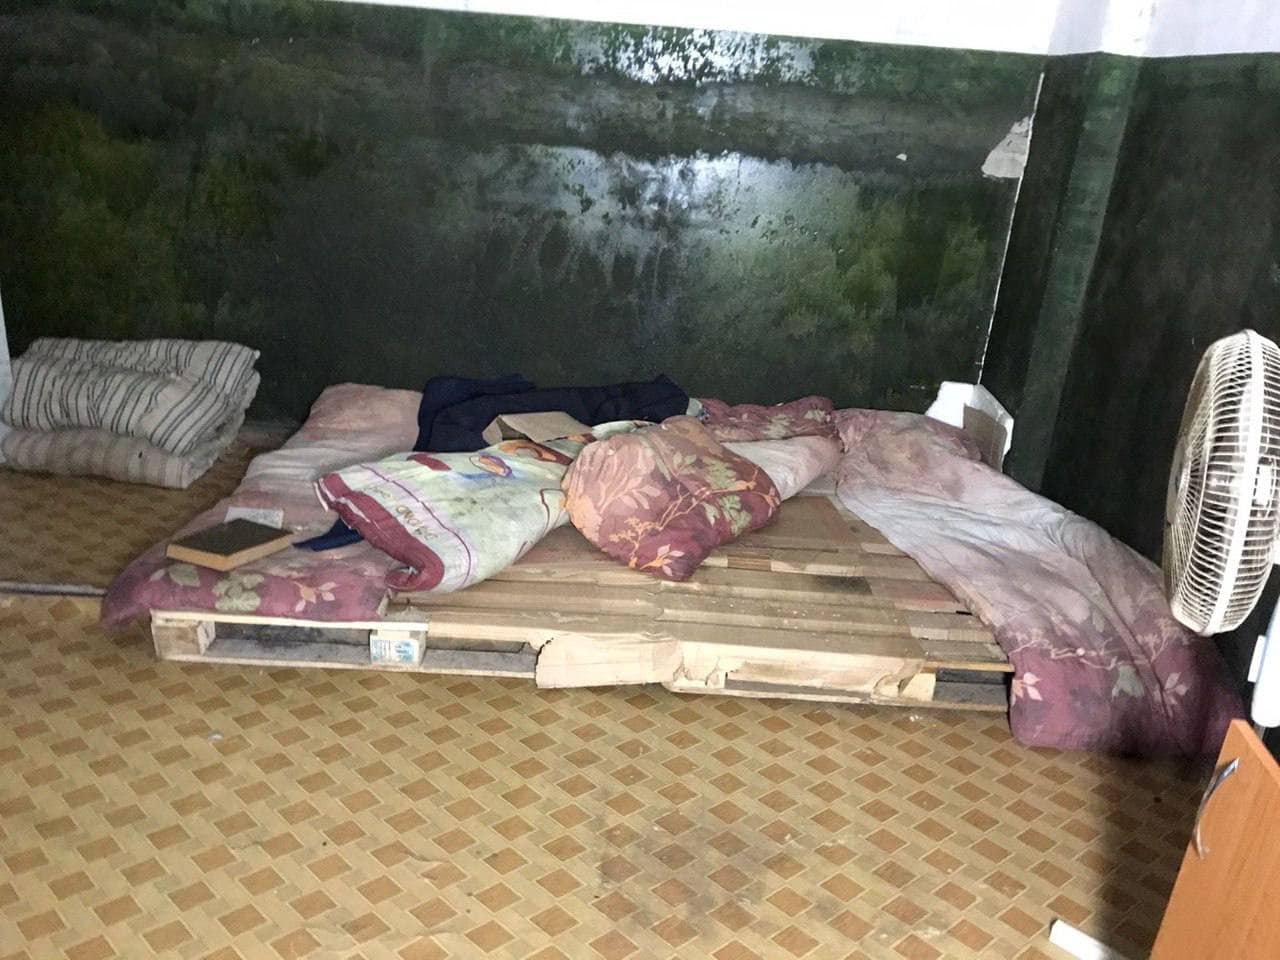 Полуголые женщины на стенах и мусор на полу: как выглядела российская комната пыток в Волчанске